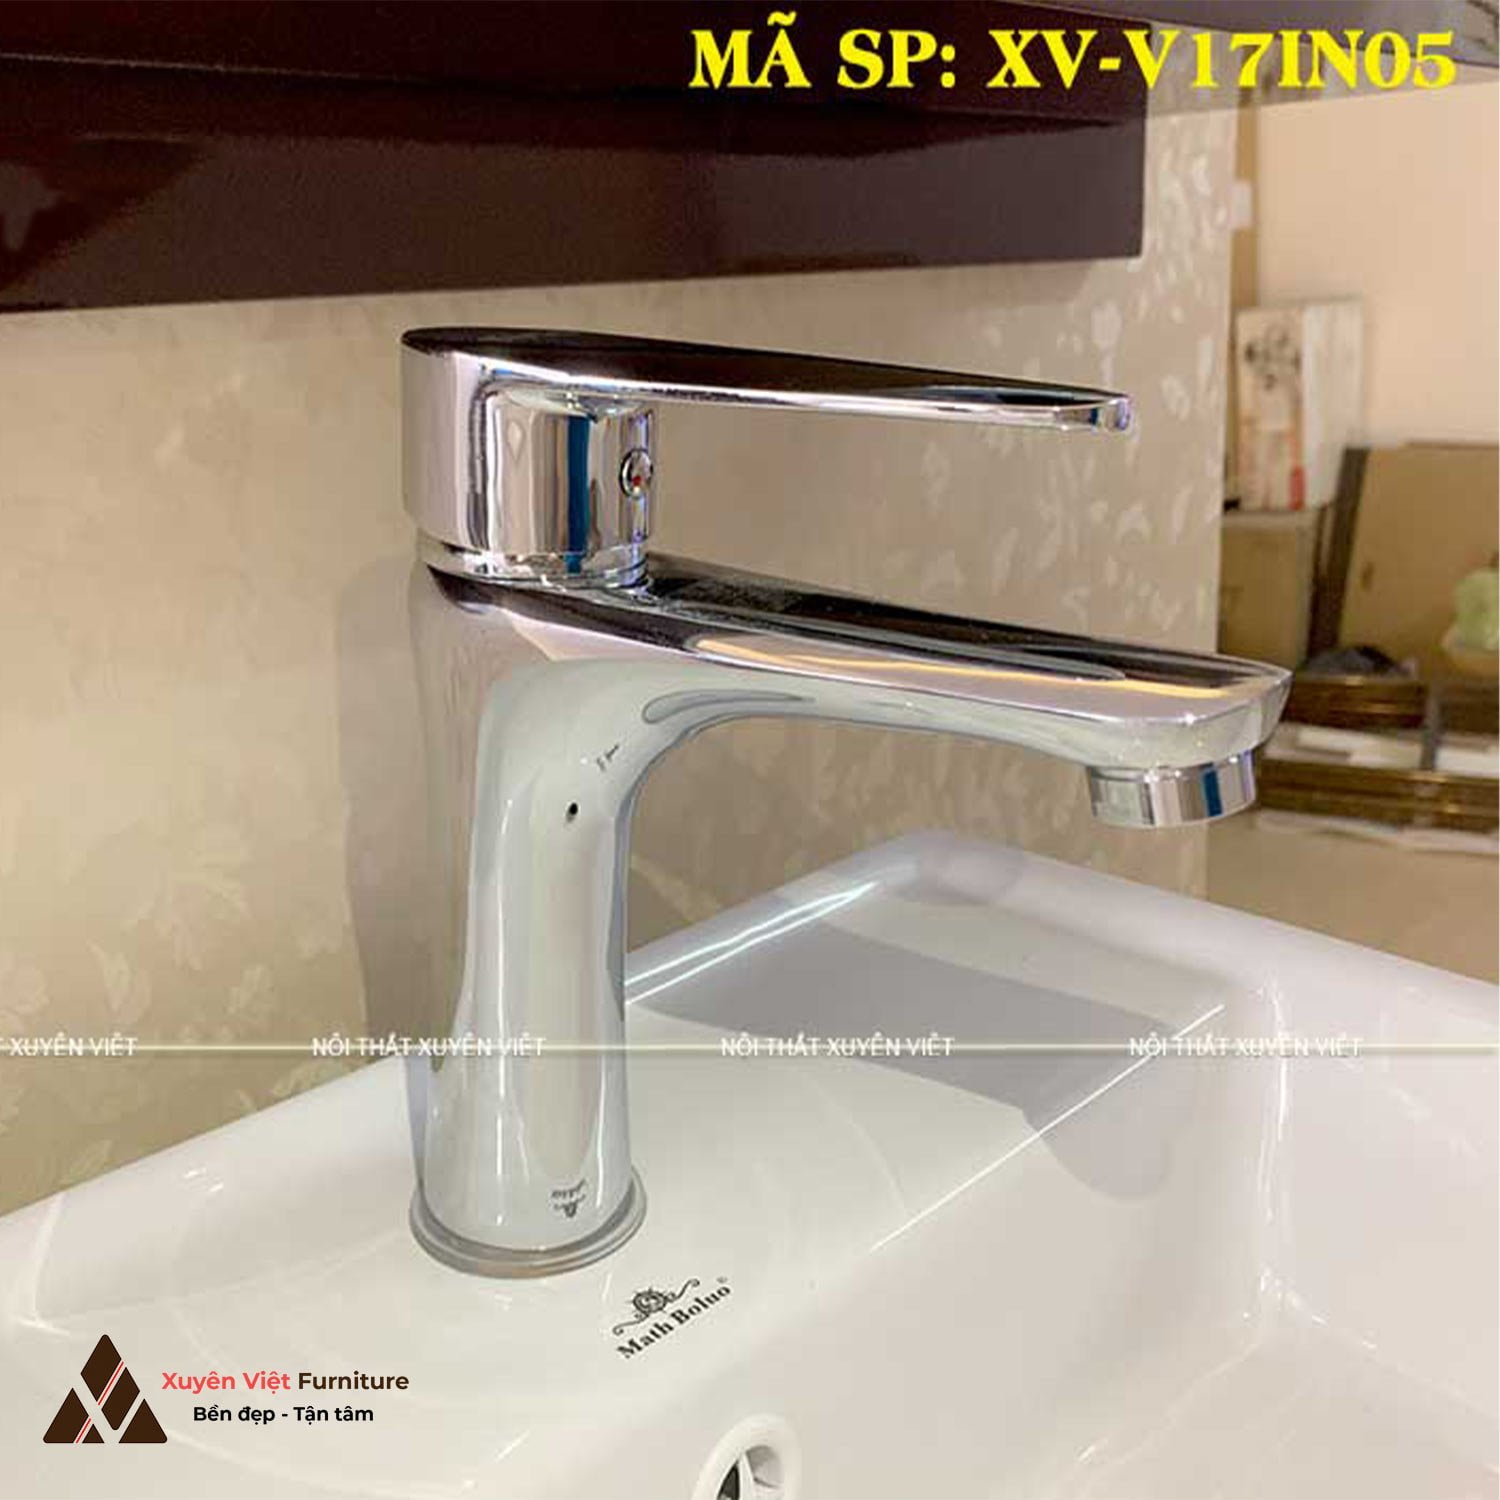 Chiếc vòi rửa lavabo XV-V17IN05 phù hợp lắp chậu âm bàn, dương vành hay đặt nổi đều được